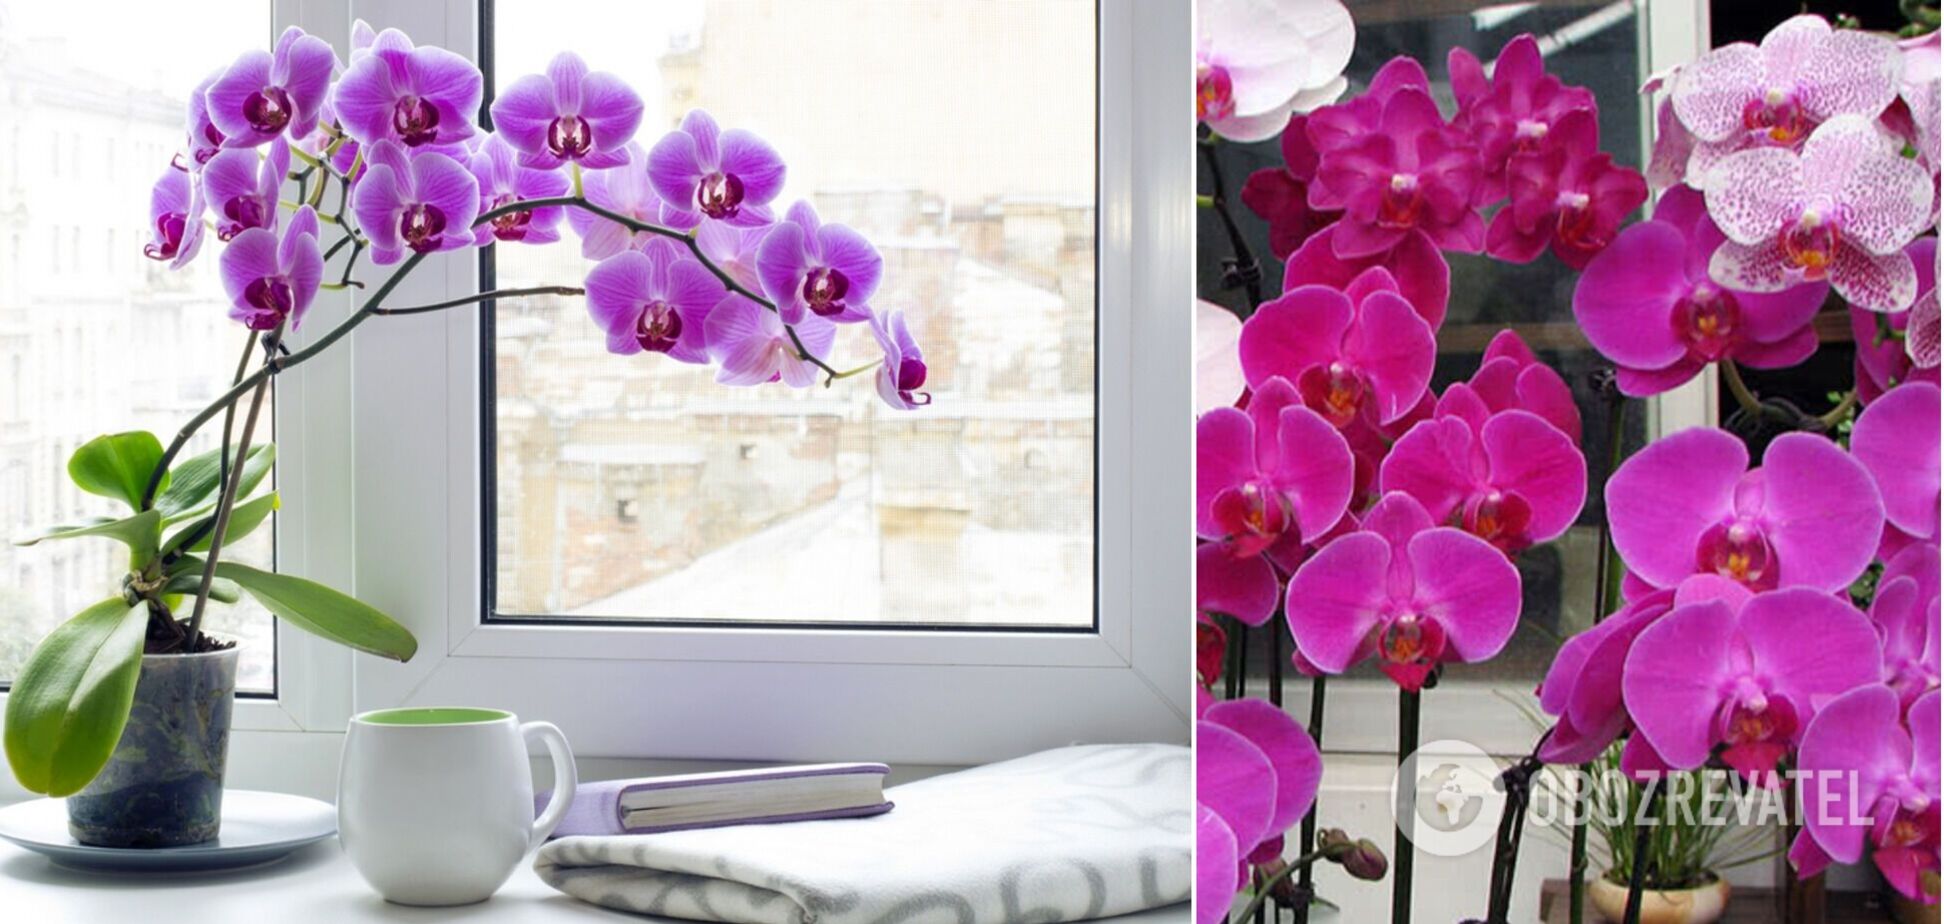 Як розбудити сплячі бруньки орхідеї: експрес-метод